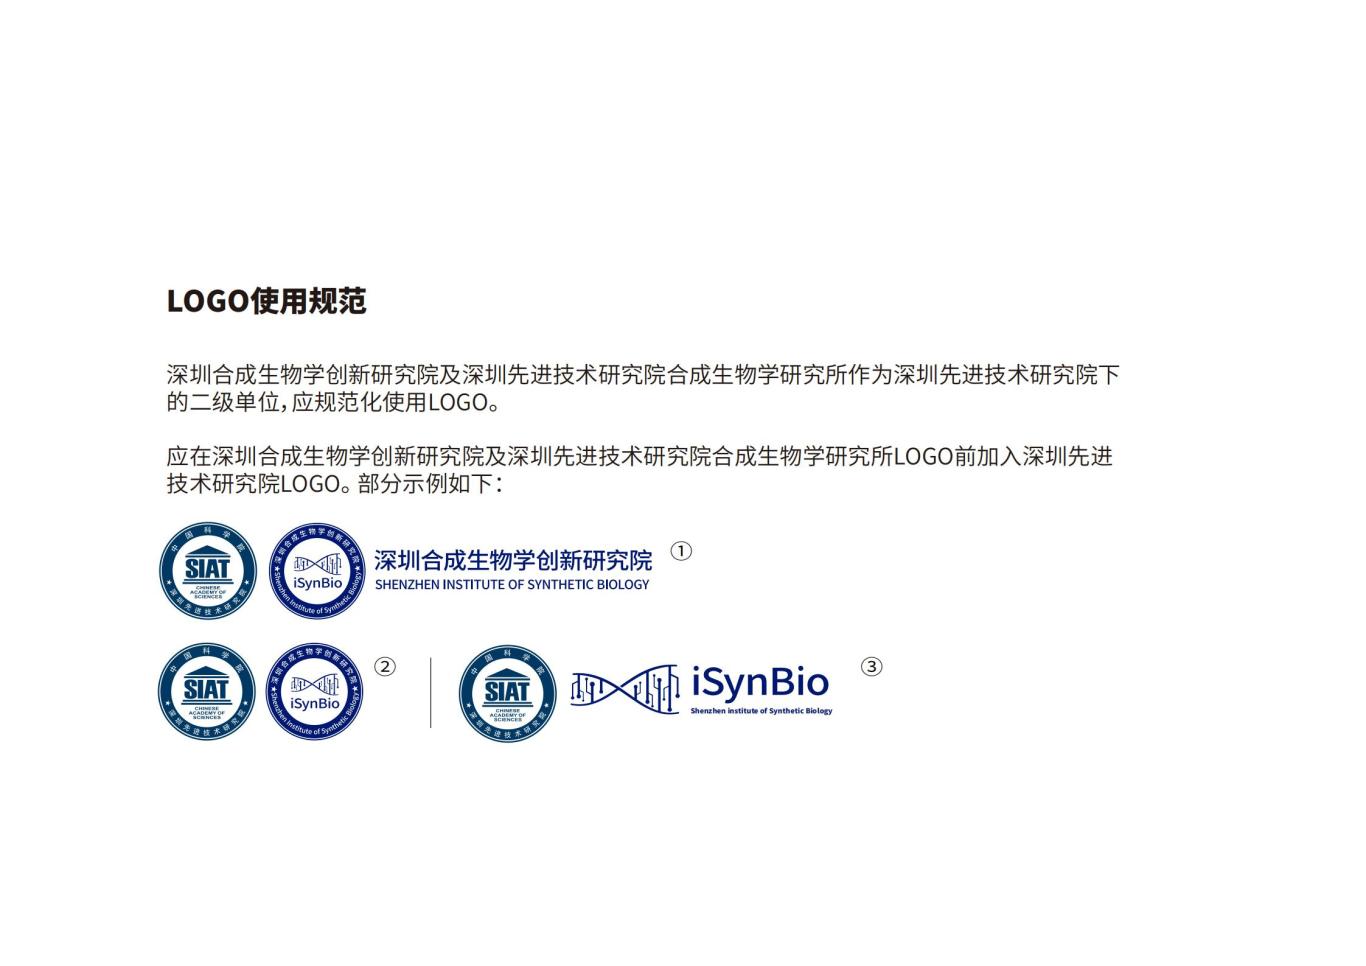 深圳合成生物学创新研究院品牌设计规范图11